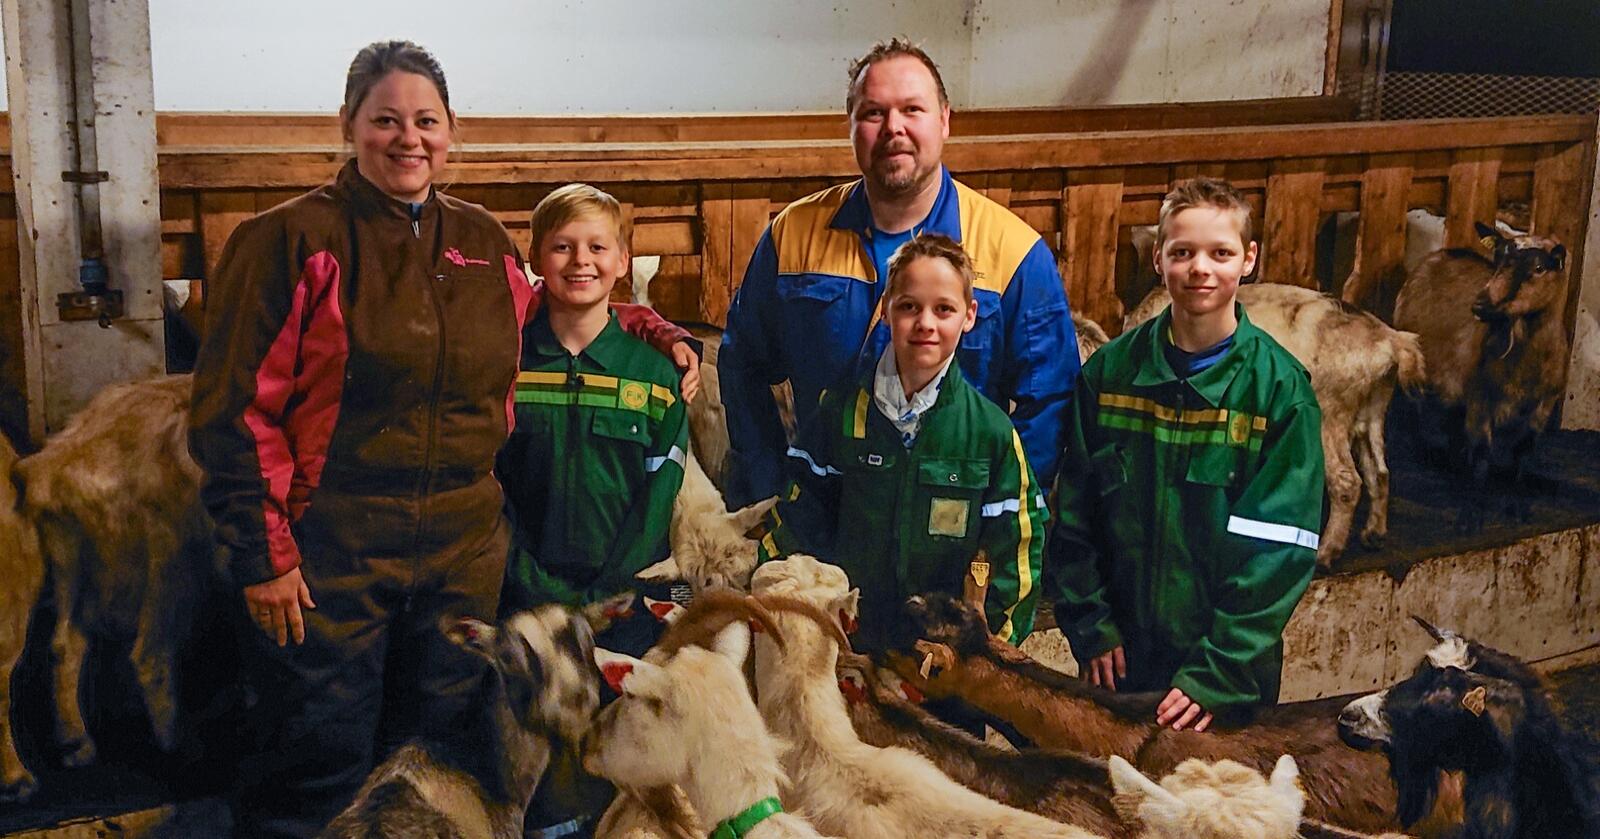 Grete Storli og Marius Neverås har drevet med melkeproduksjon på geit siden de tok over gården i 2013. Her med sønnene Vegard, Daniel og Johannes. (Alle foto: Privat)